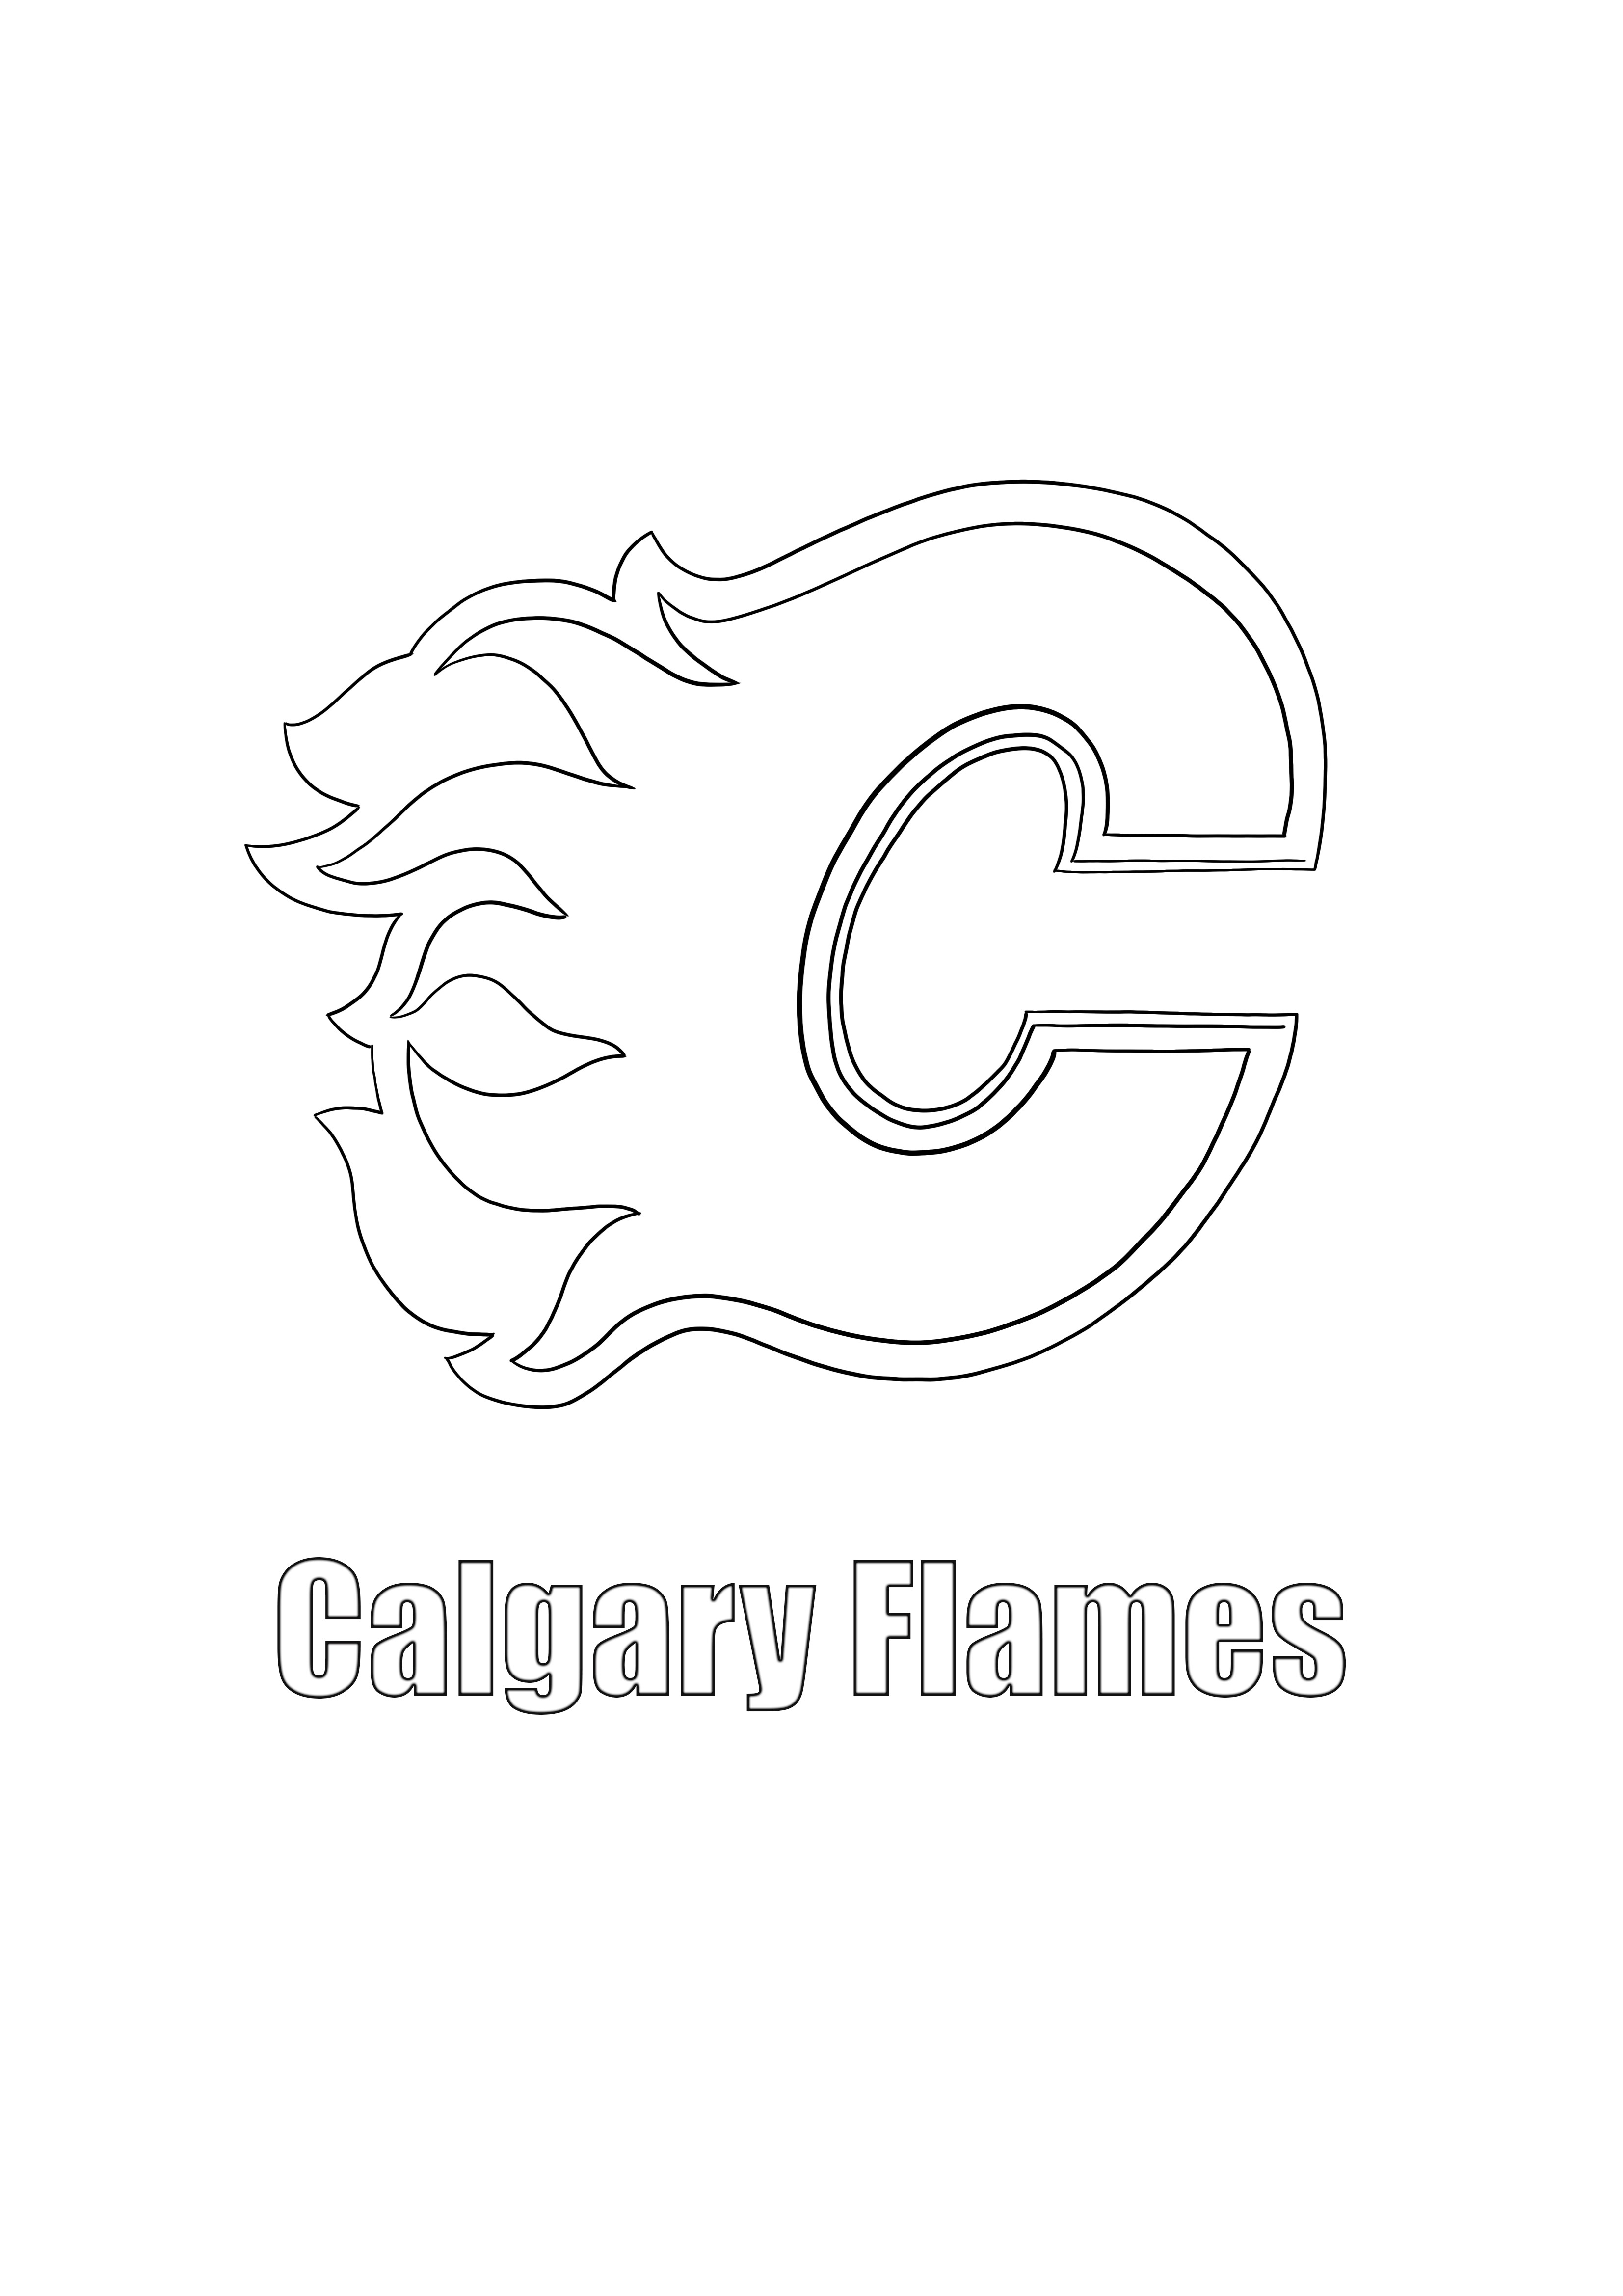 Logo de Calgary Flames para imprimir y colorear gratis